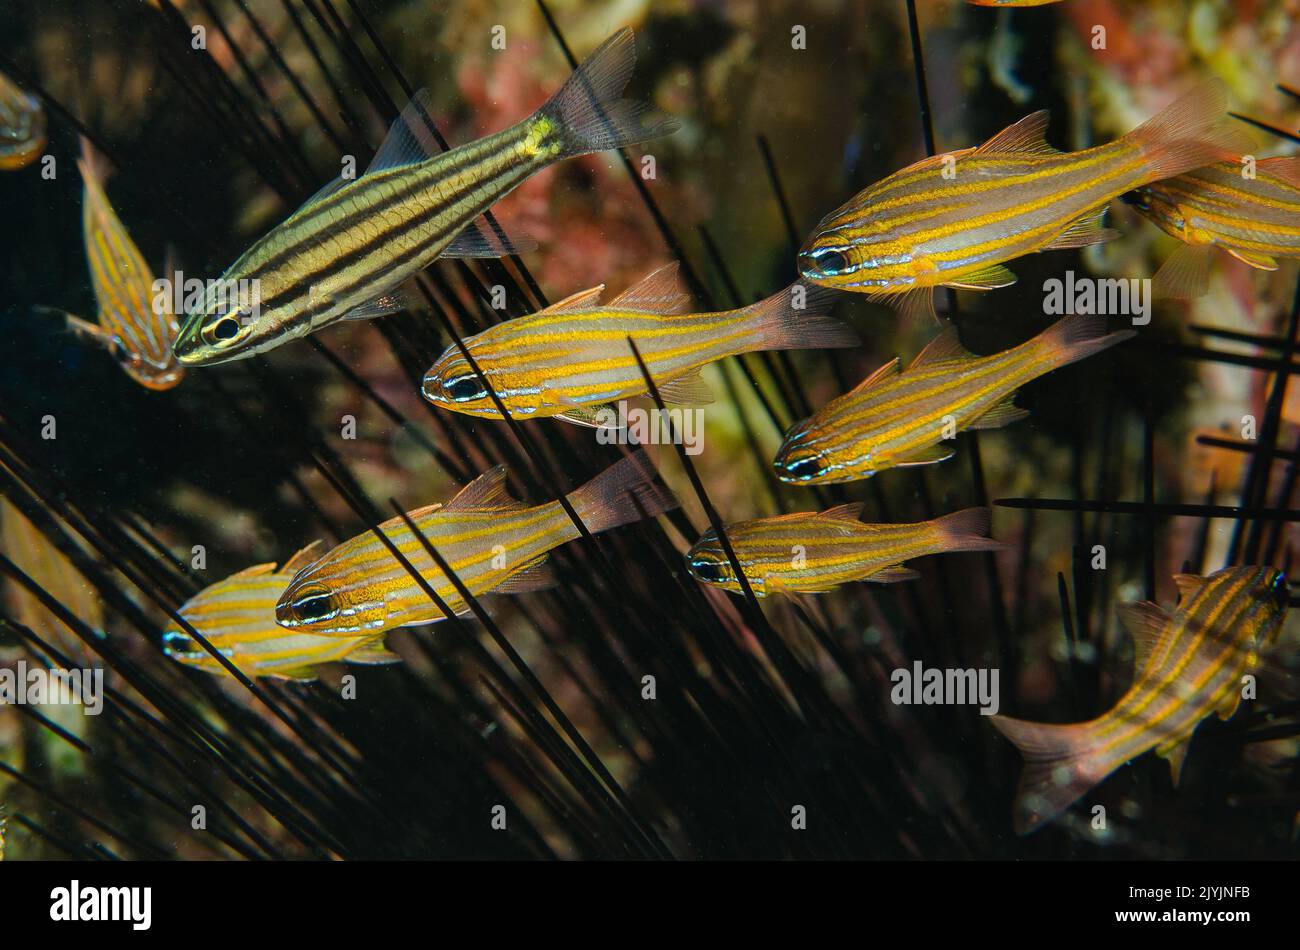 Pesce cardinale a righe gialle, cianosoma di Apogon, Apogonidae, in simbiosi mutualistica con un riccio di mare Diadema, Anilao, Filippine, Asia Foto Stock